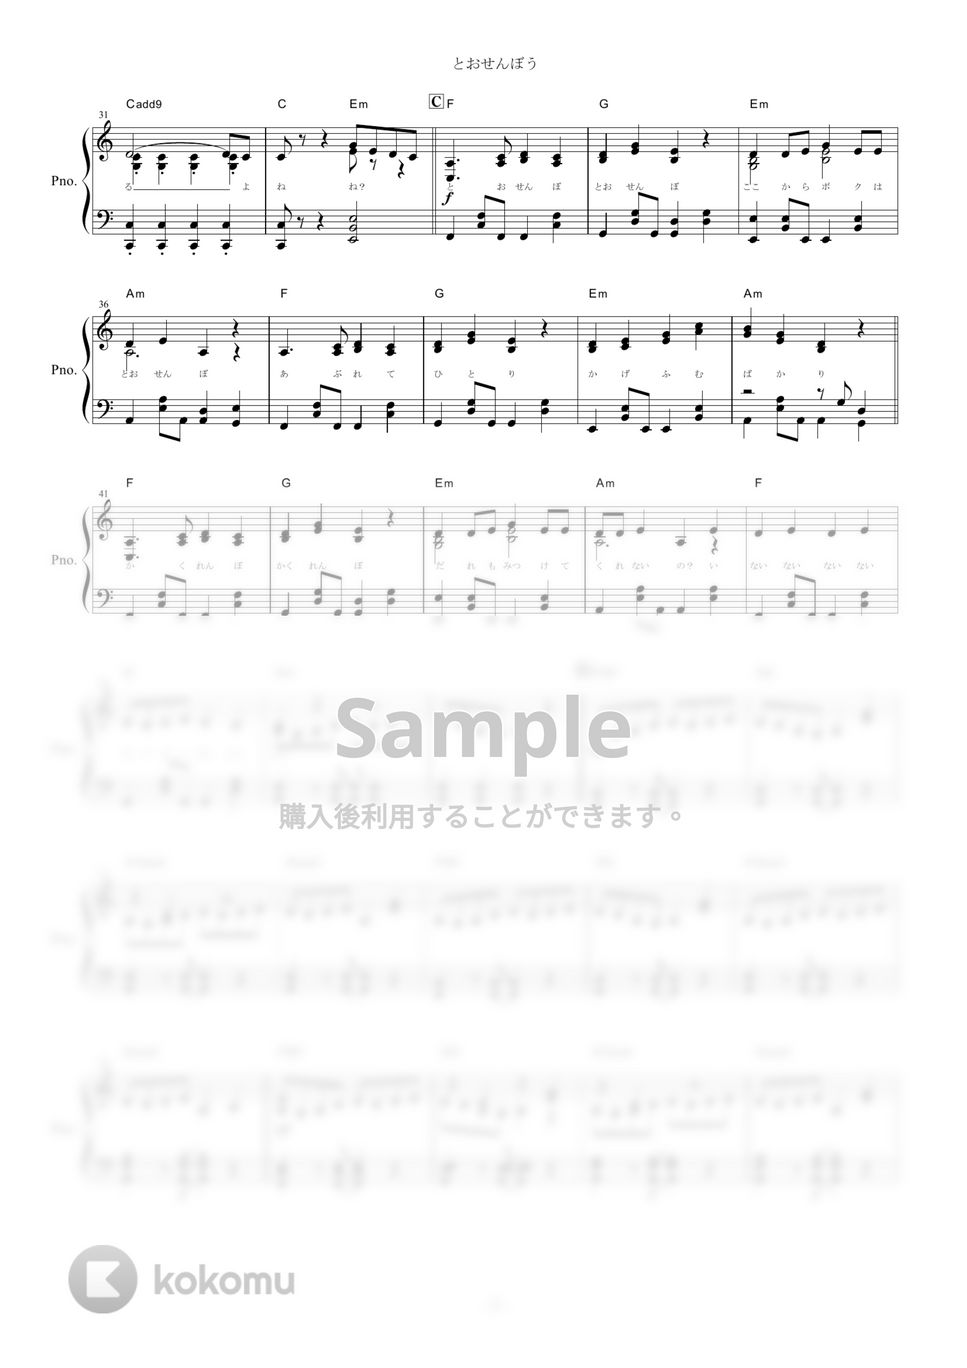 まふまふ - とおせんぼう (ピアノ楽譜/全５ページ) by yoshi